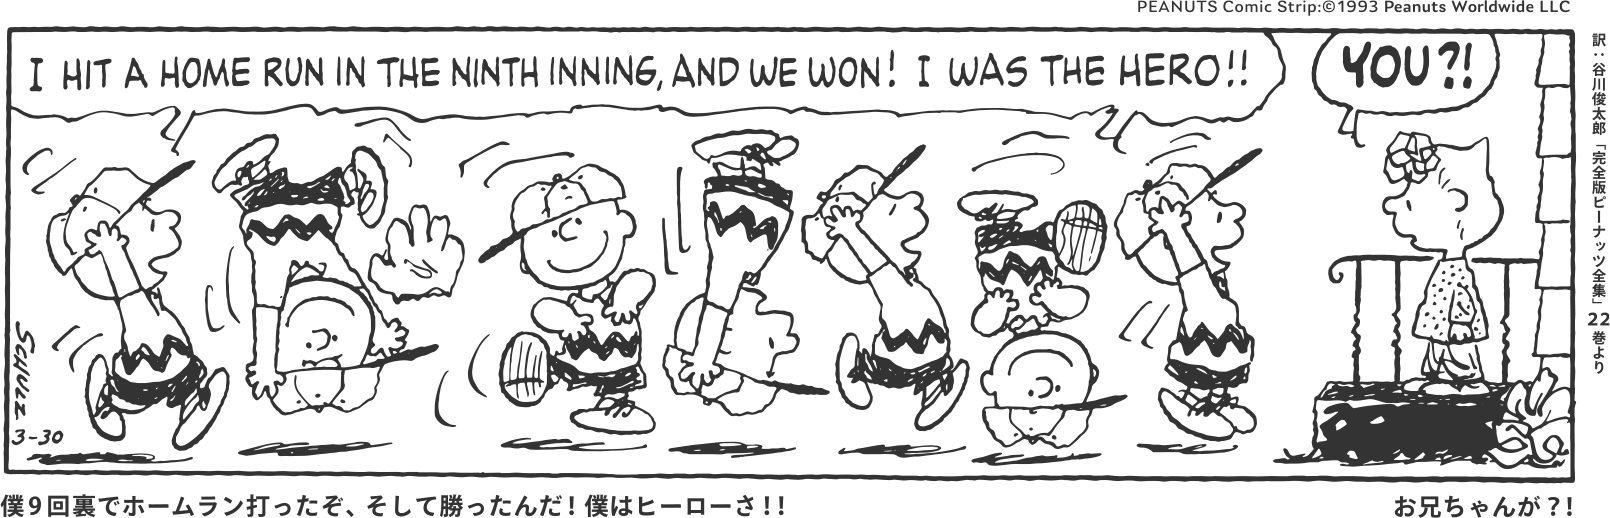 僕9回裏でホームラン打ったぞ、そして勝ったんだ！僕はヒーローさ！！ お兄ちゃんが？！ PEANUTS Comic Strip:©1993 Peanuts Worldwide LLC 訳：谷川俊太郎「完全版ピーナッツ全集」22巻より